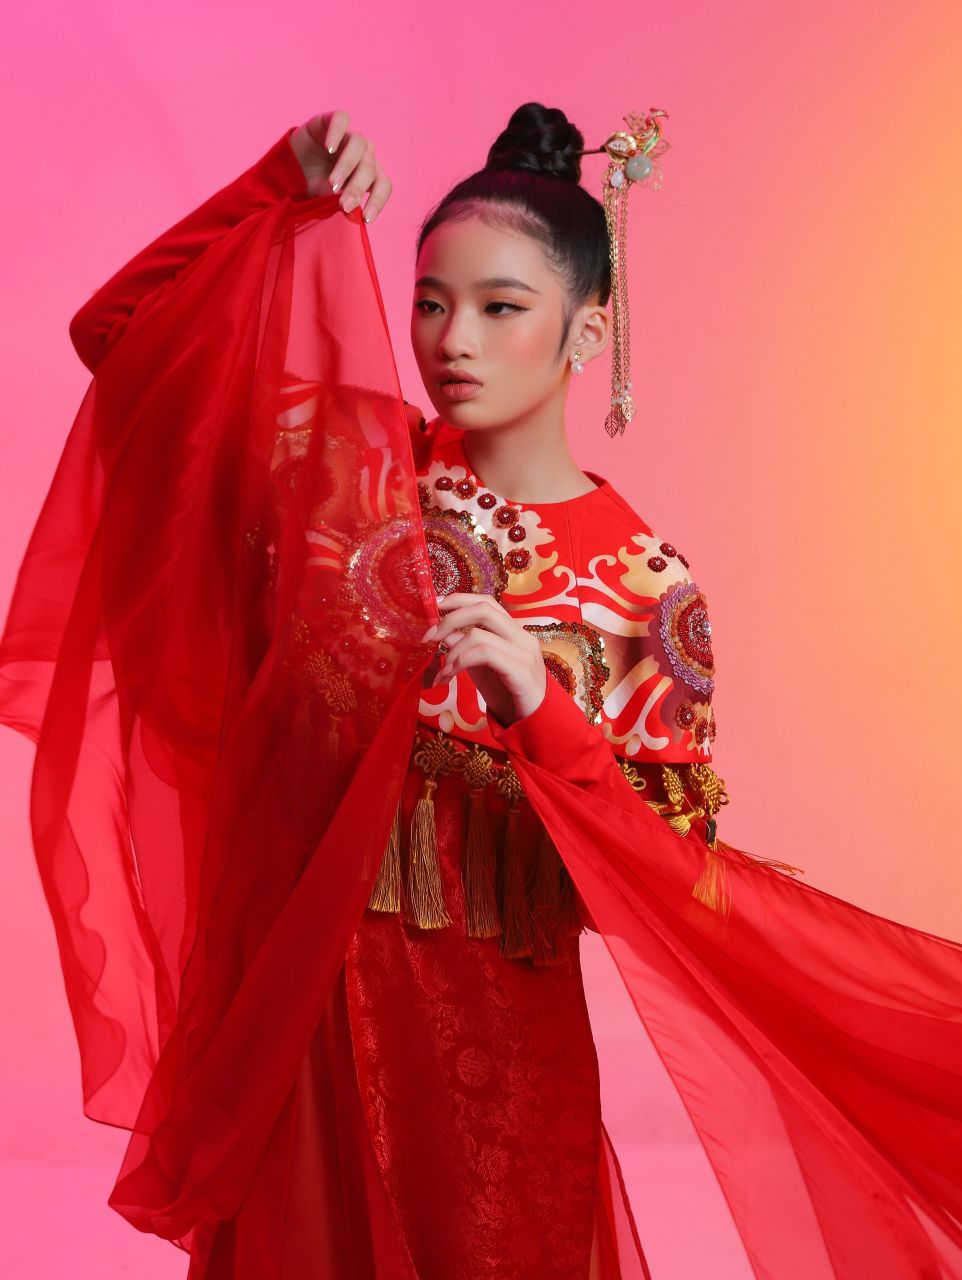 Bao Ha17 Mẫu nhí Bảo Hà đẹp lạ trong bộ ảnh lấy cảm hứng từ văn hóa Á Đông